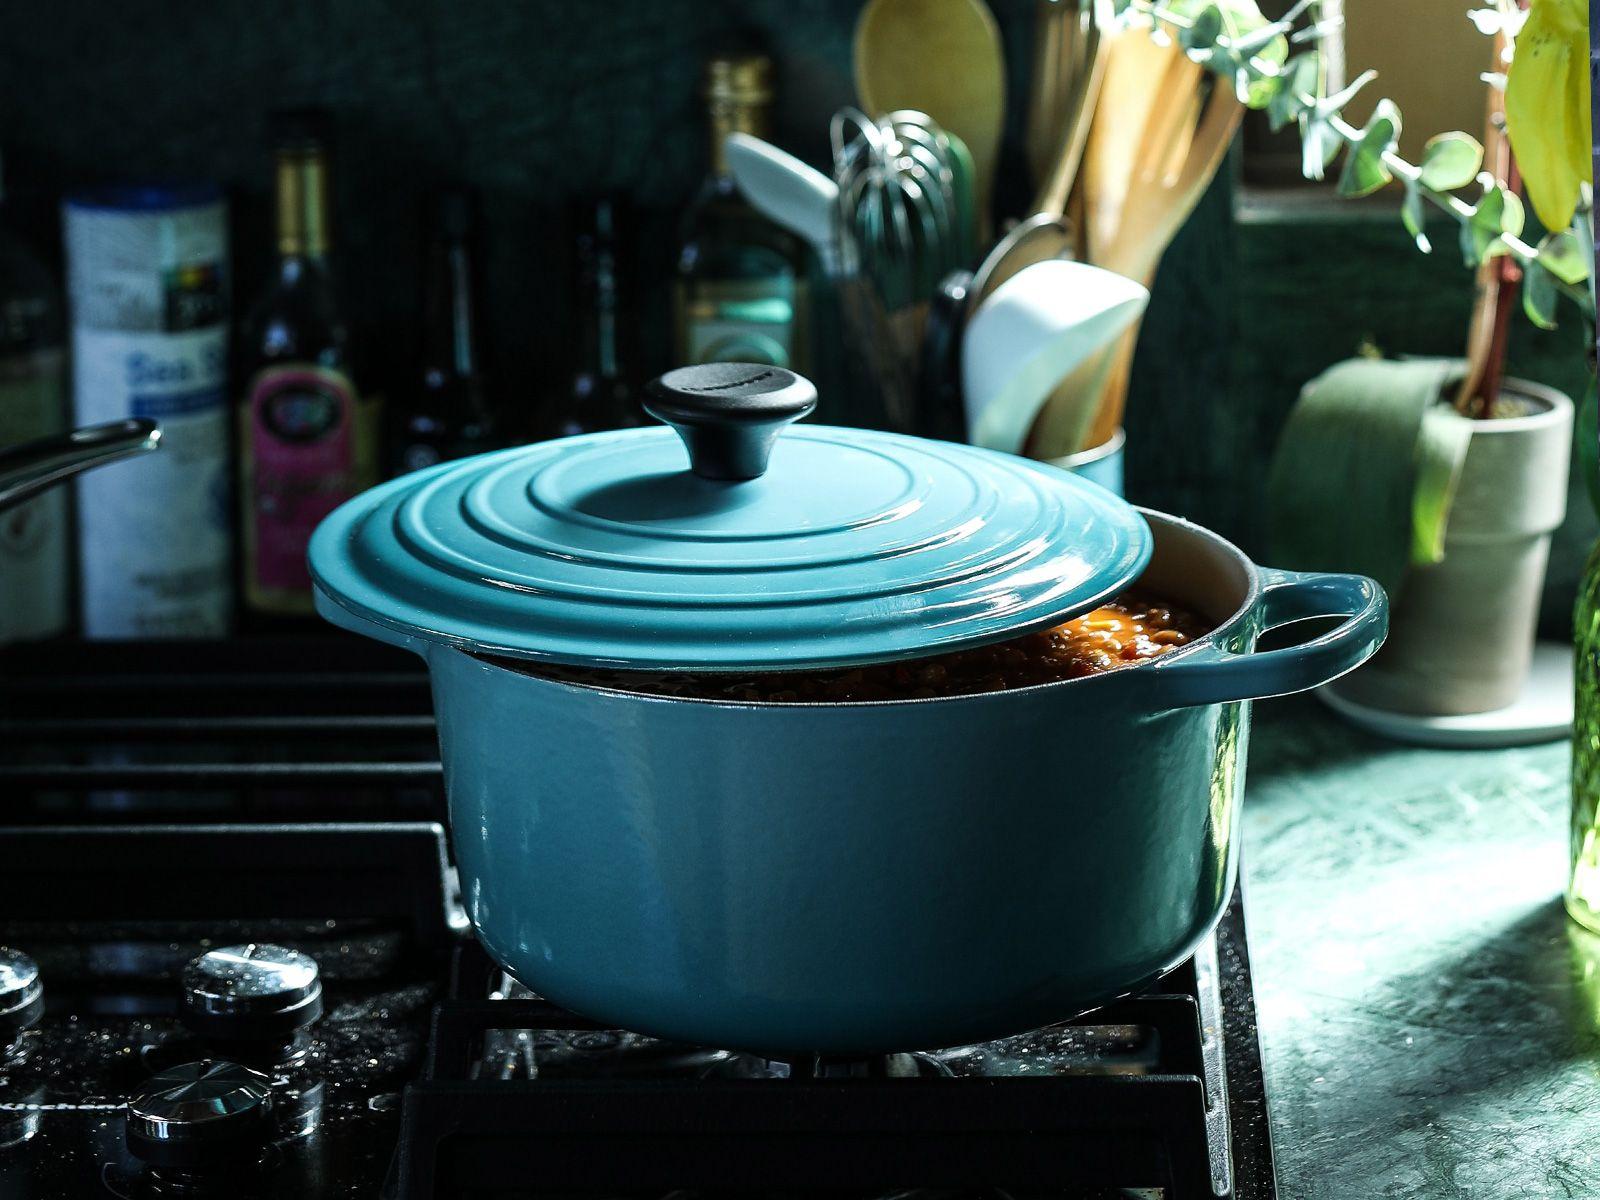 Pots-Pans-Dutch-Oven-Colored.jpg